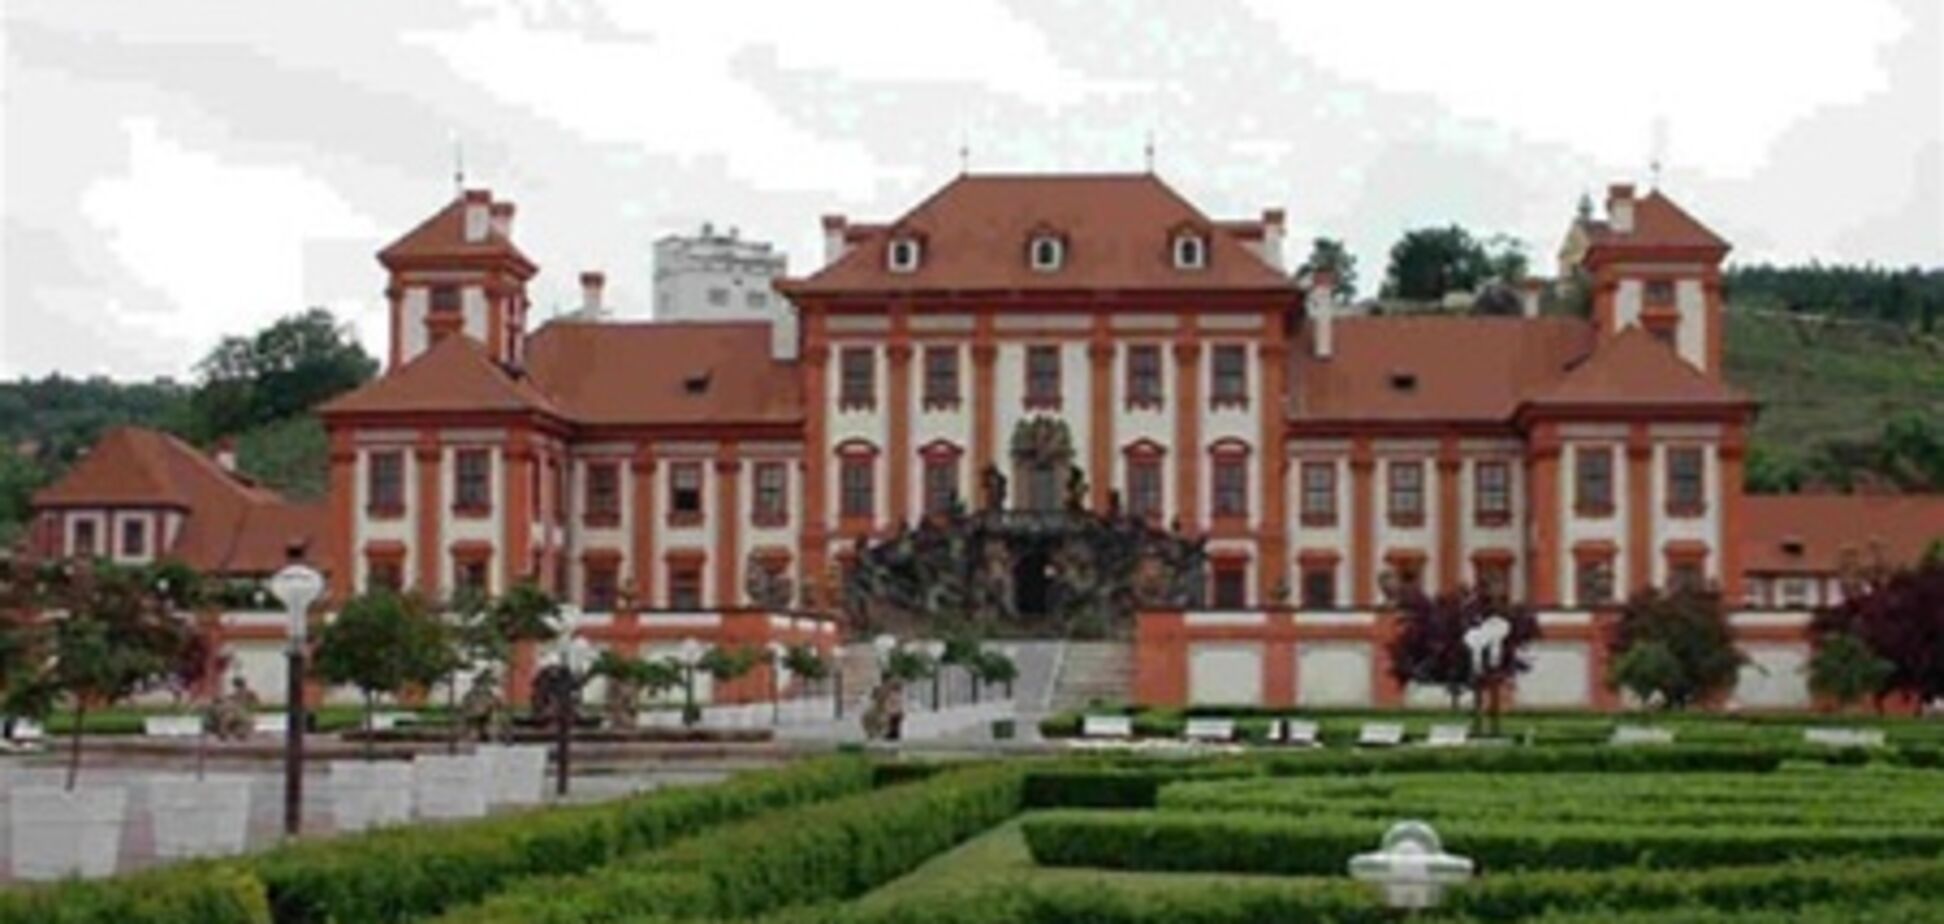 Неделя дизайна пройдет во дворцах Праги